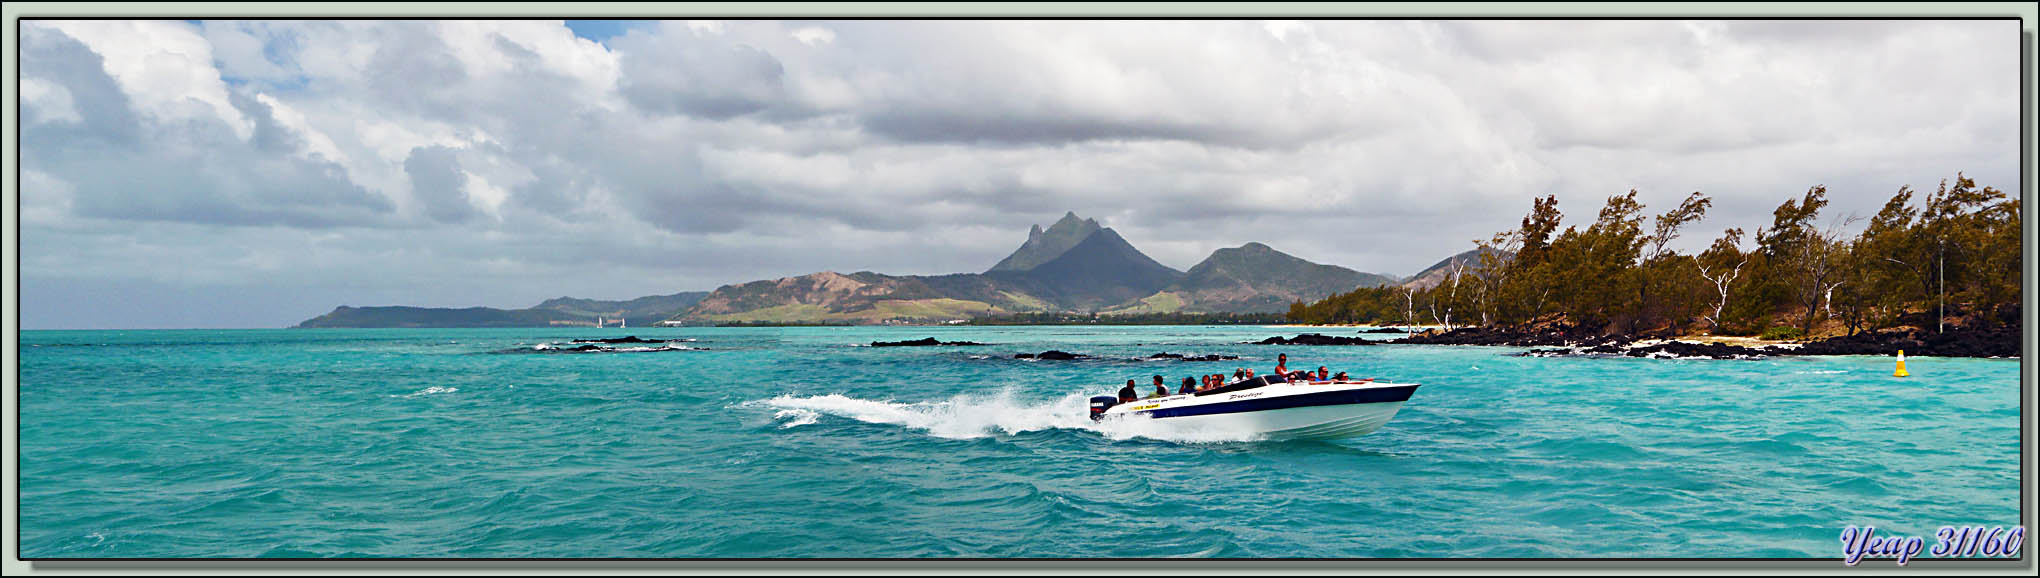 Images des îles Maurice et Rodrigues (2011) - (page 29) - Images ...